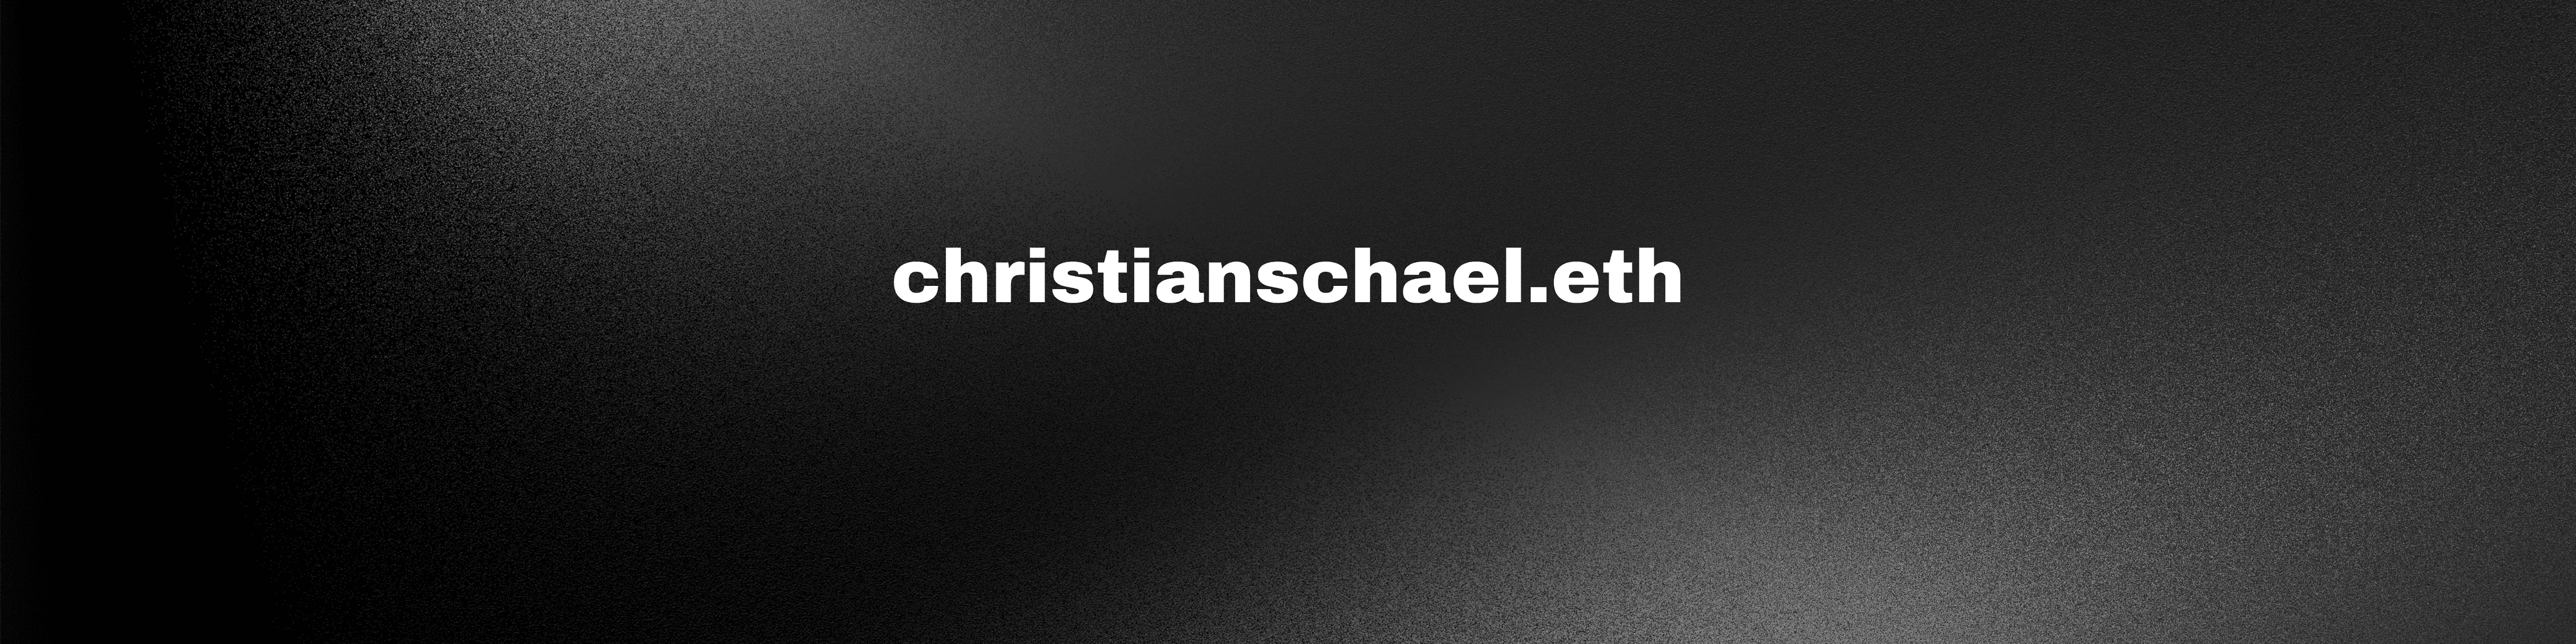 christianschael.eth banner